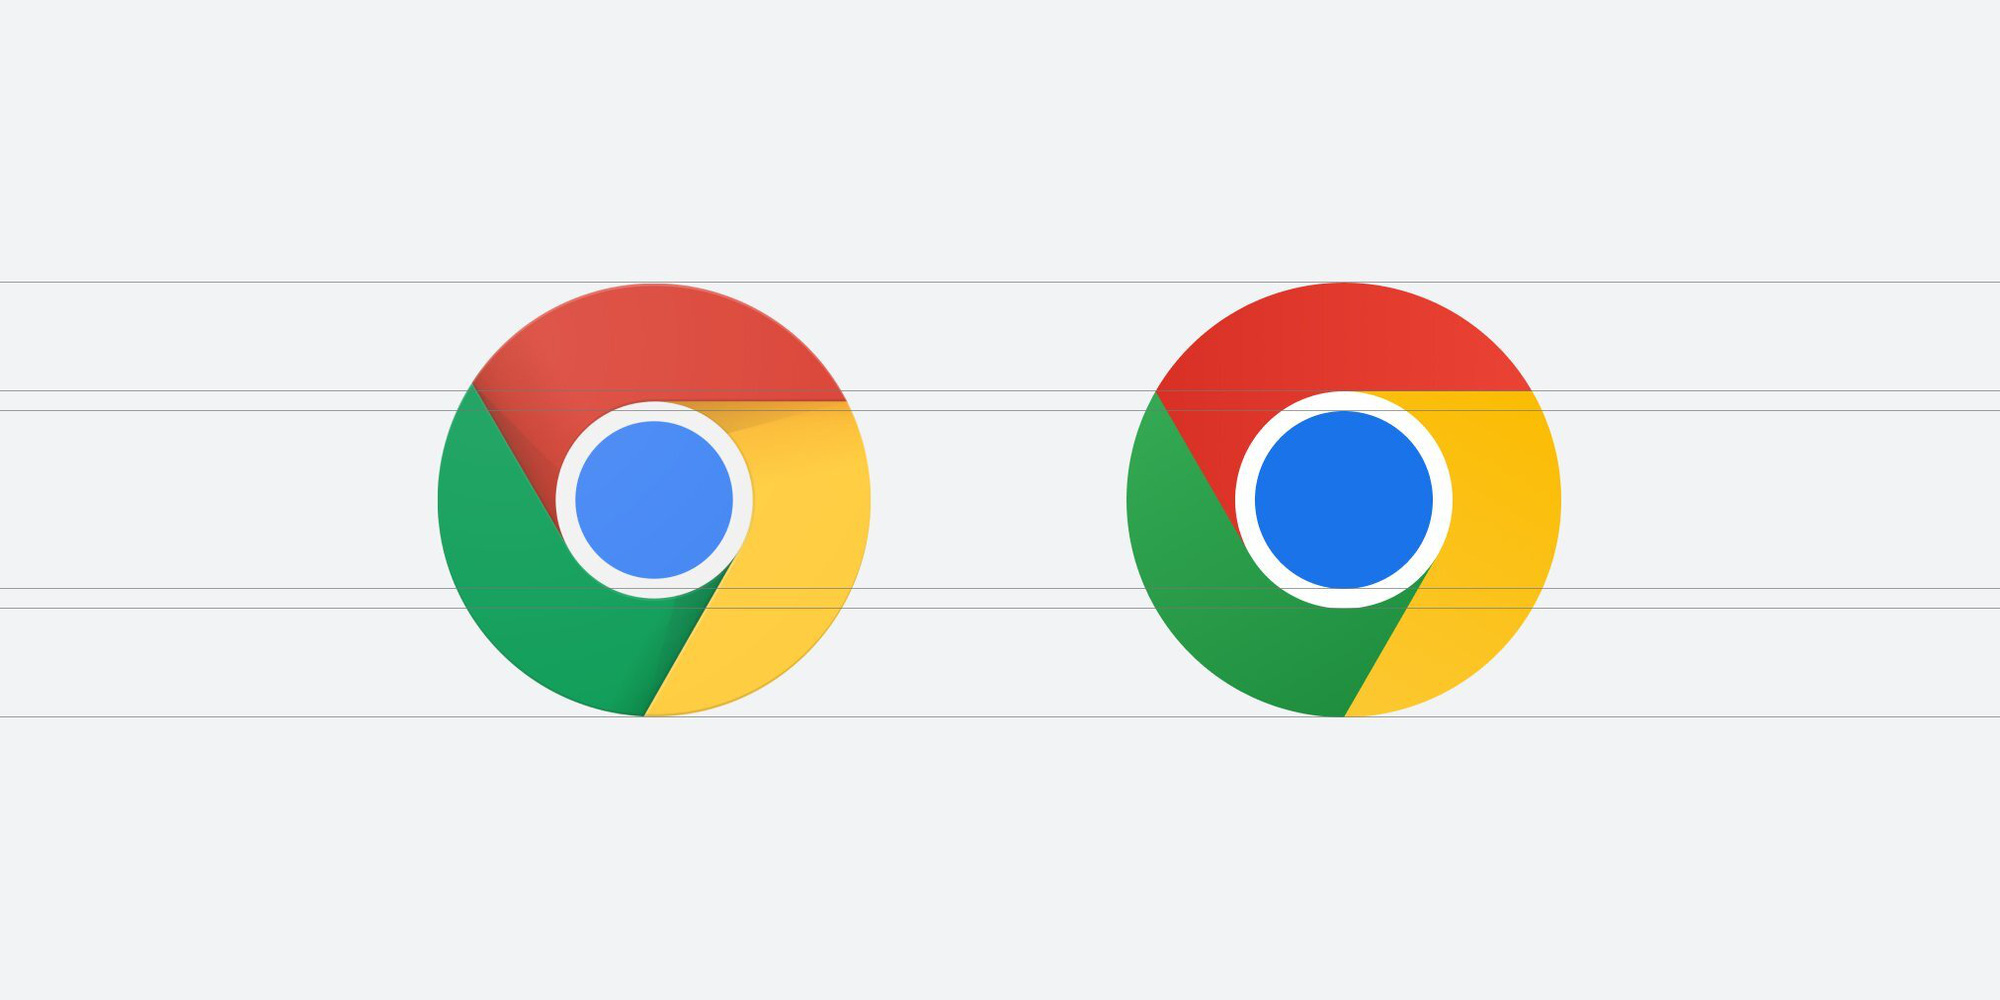 Tận hưởng trải nghiệm tốt nhất cùng logo mới của Google Chrome sau 8 năm. Với sự thay đổi táo bạo và đầy sáng tạo, logo mới của trình duyệt sẽ tạo ấn tượng tốt đối với bạn và giúp bạn có một trải nghiệm trình duyệt tốt nhất.